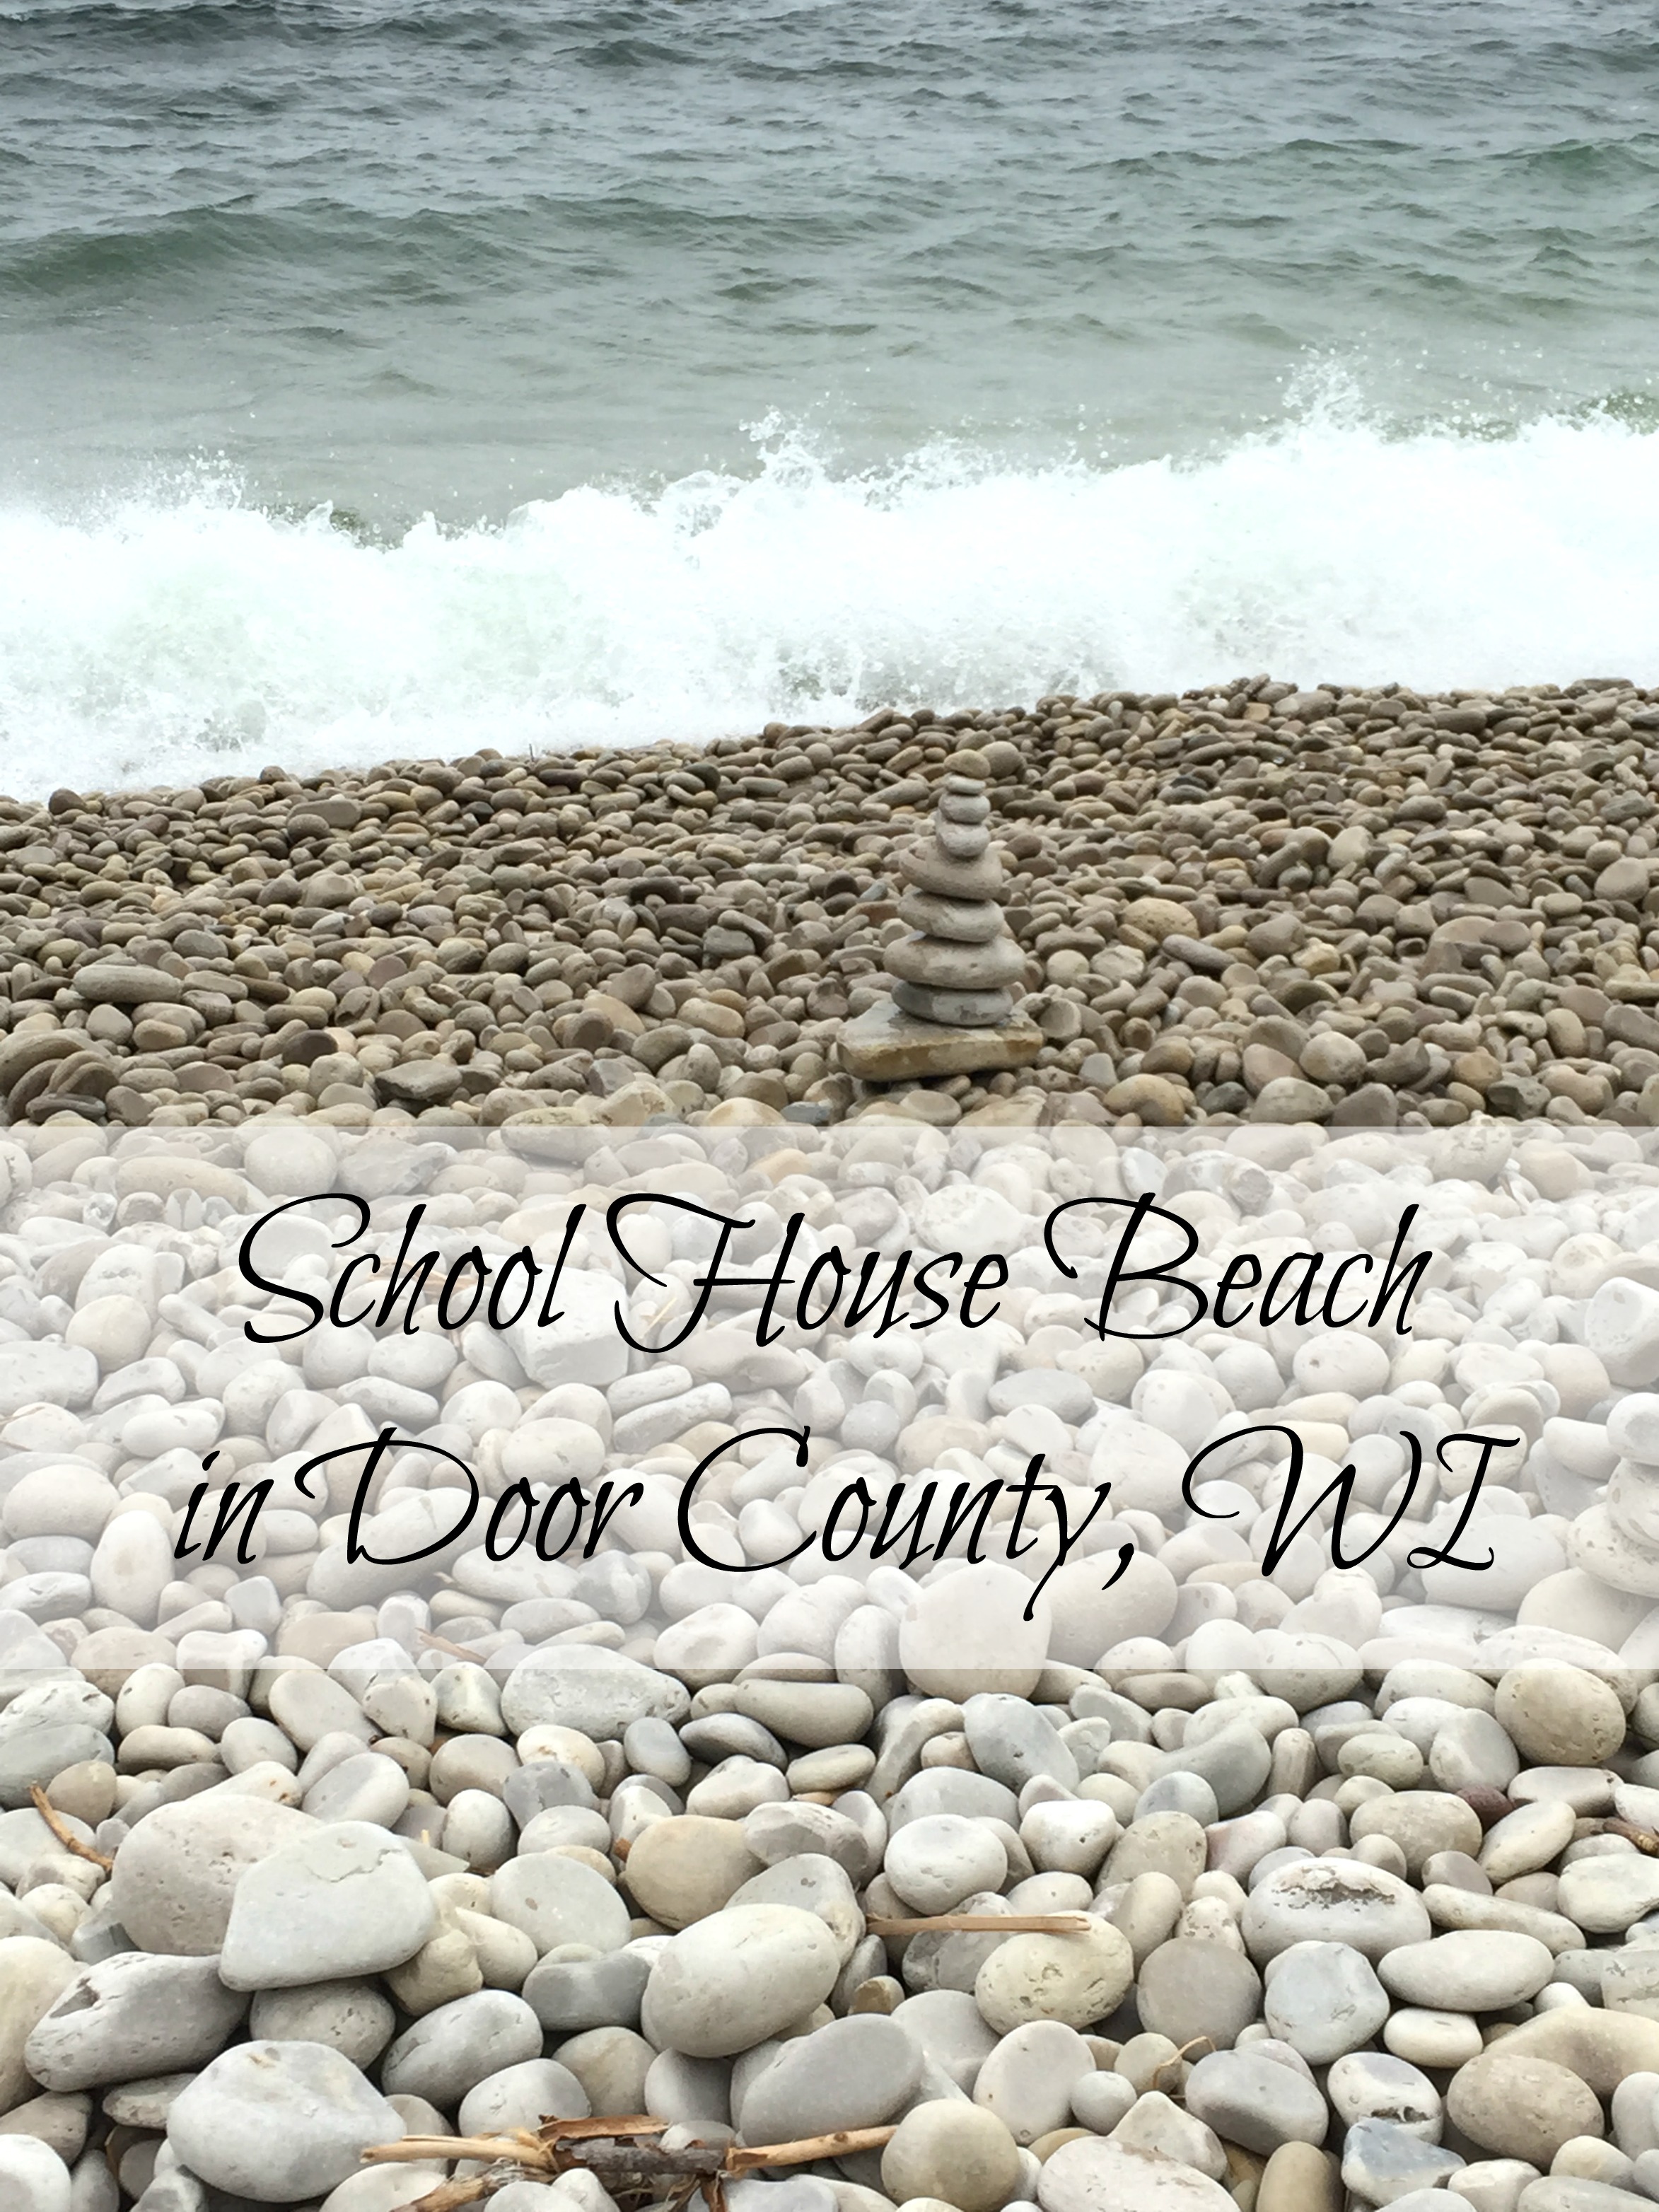 School House Beach in Door County, WI